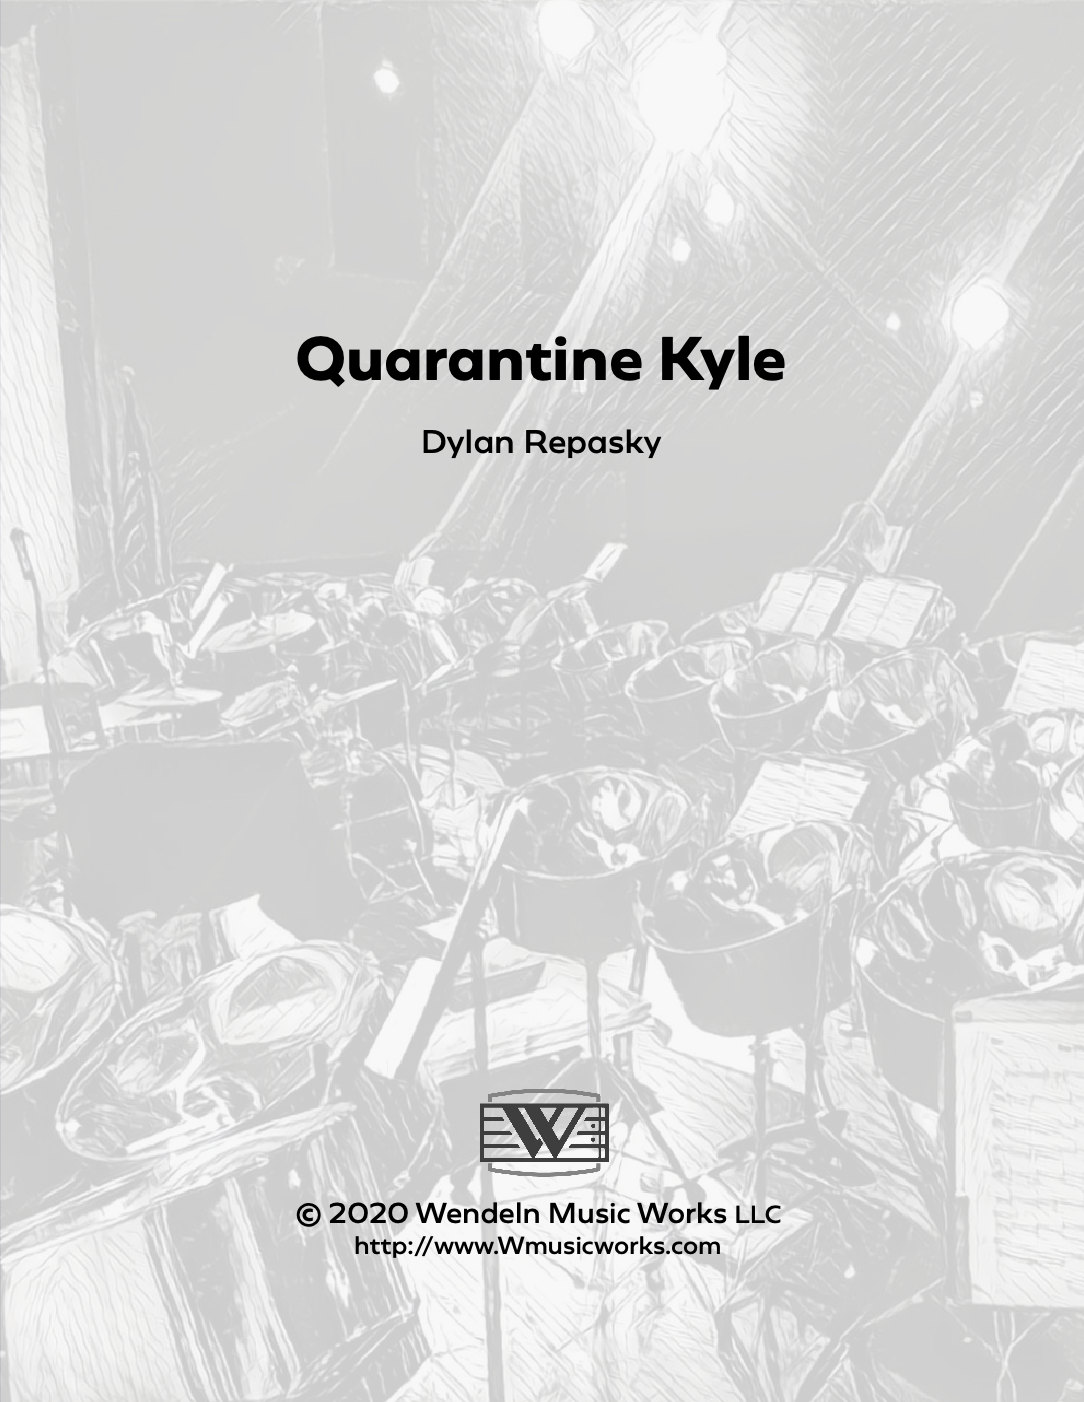 Quarantine Kyle